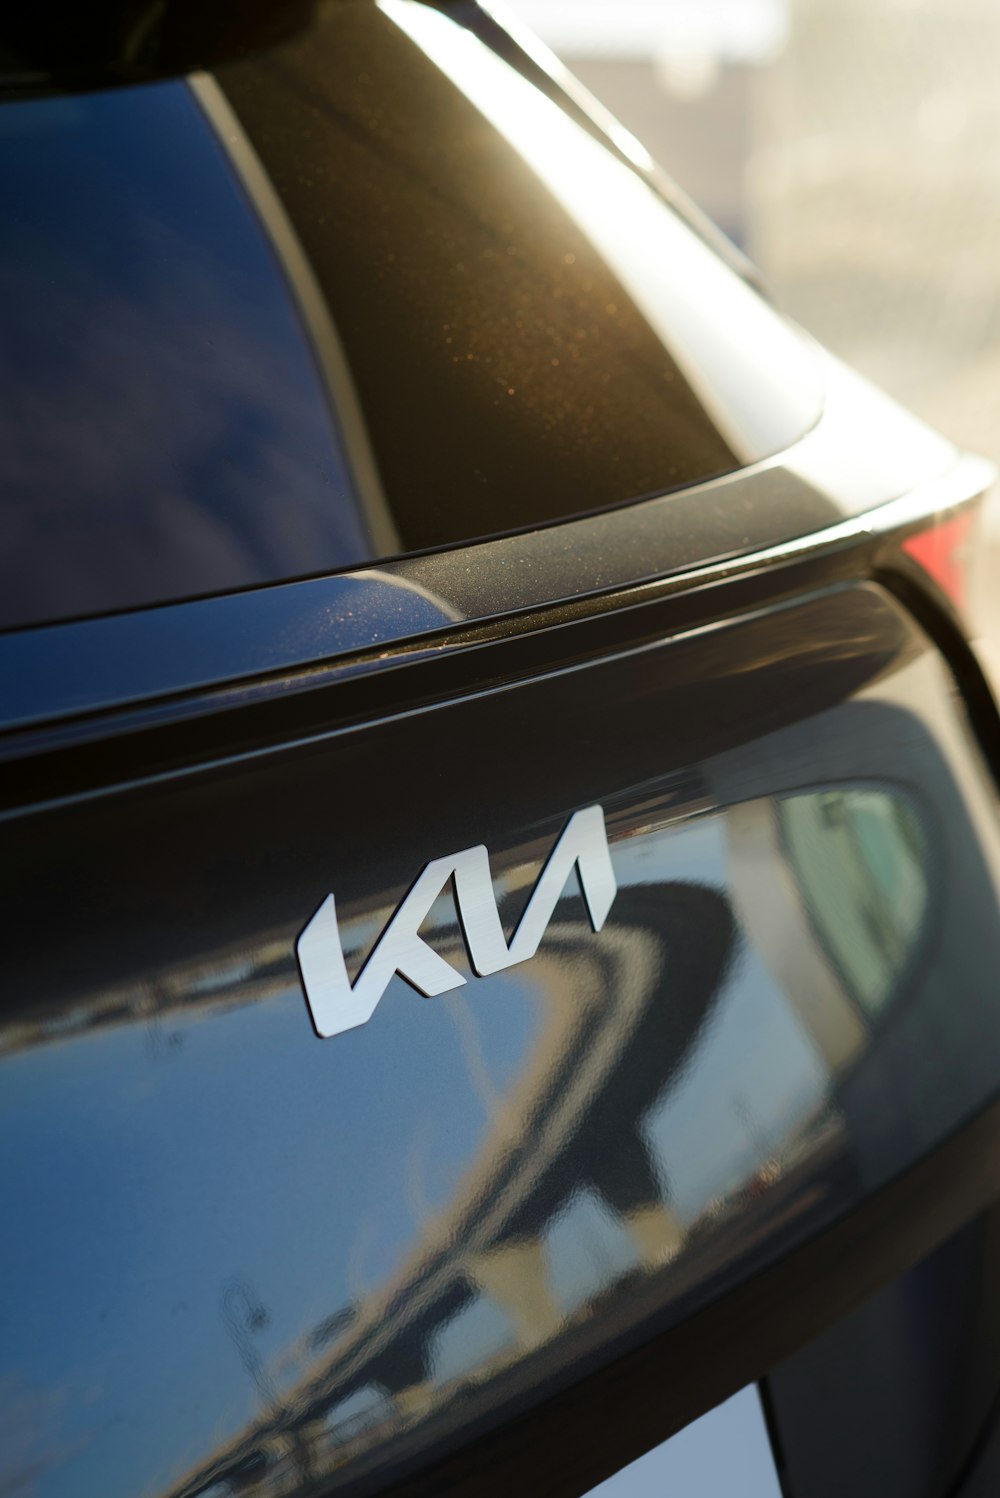 Um close up de um carro com as letras Klua